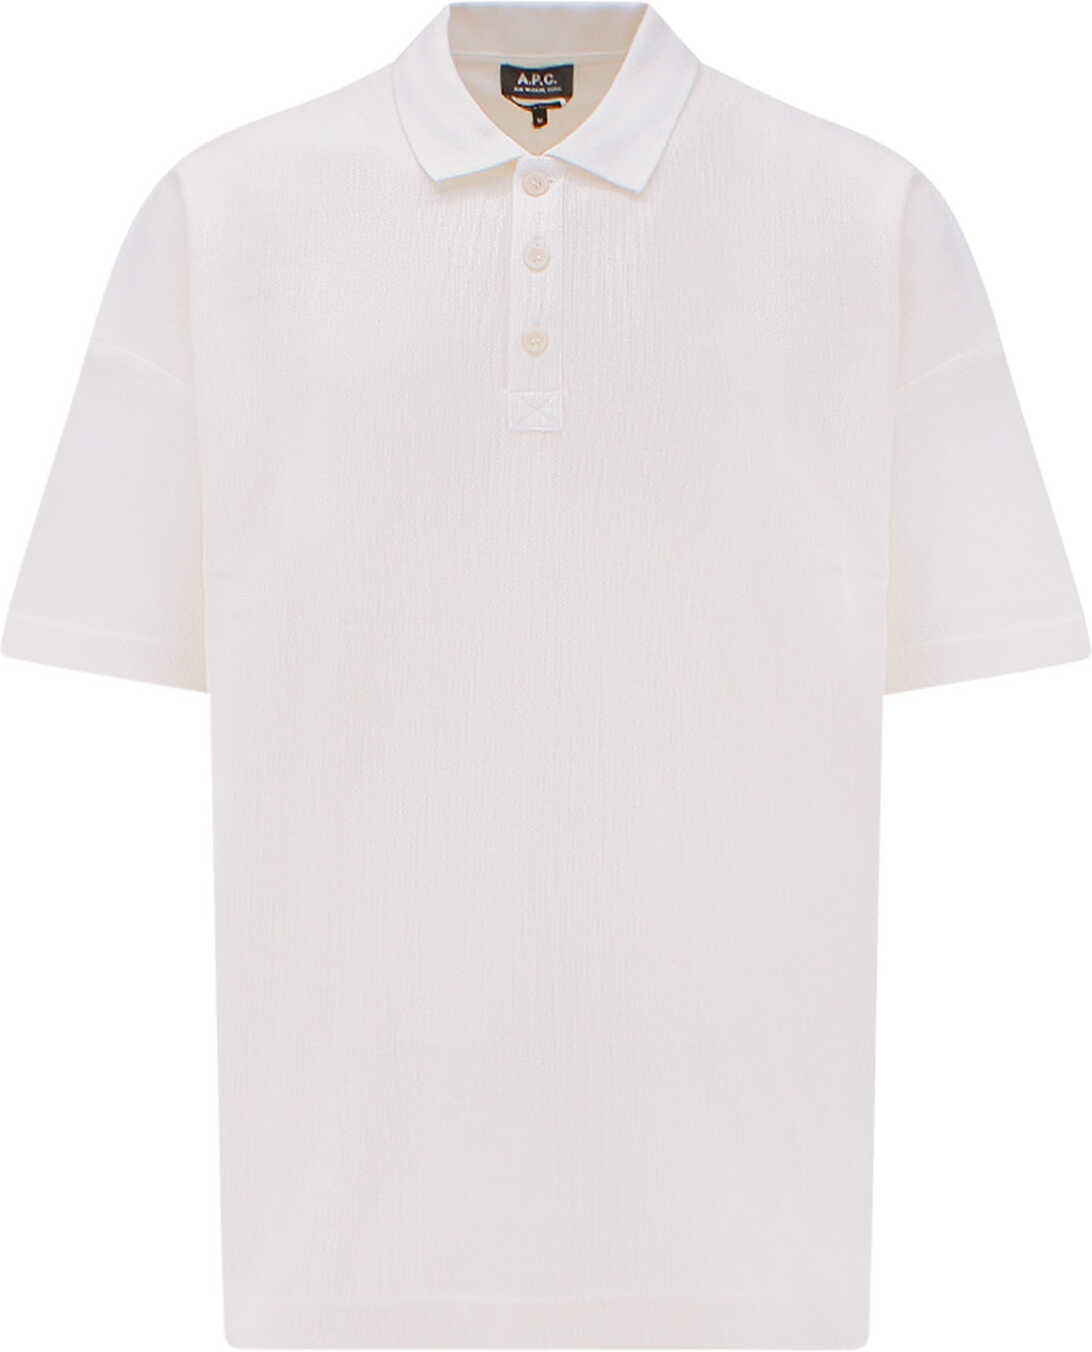 APC Polo Shirt White